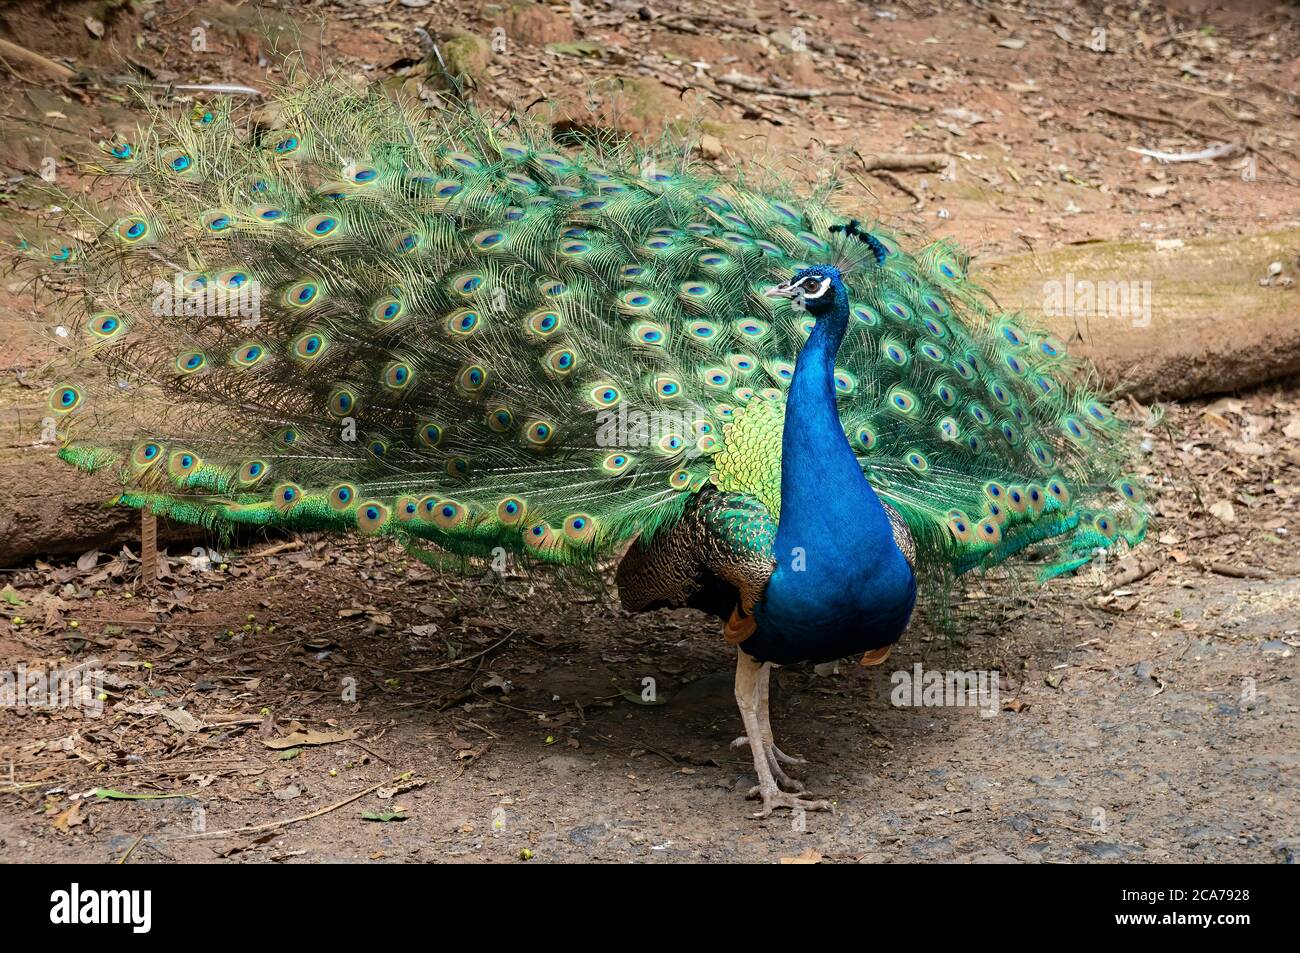 Un ave de ave India (Pavo cristatus - una especie de Pheasant) abriendo sus coloridas y brillantes plumas de cola para un peahen dentro del parque zoológico Zoo Safari. Foto de stock